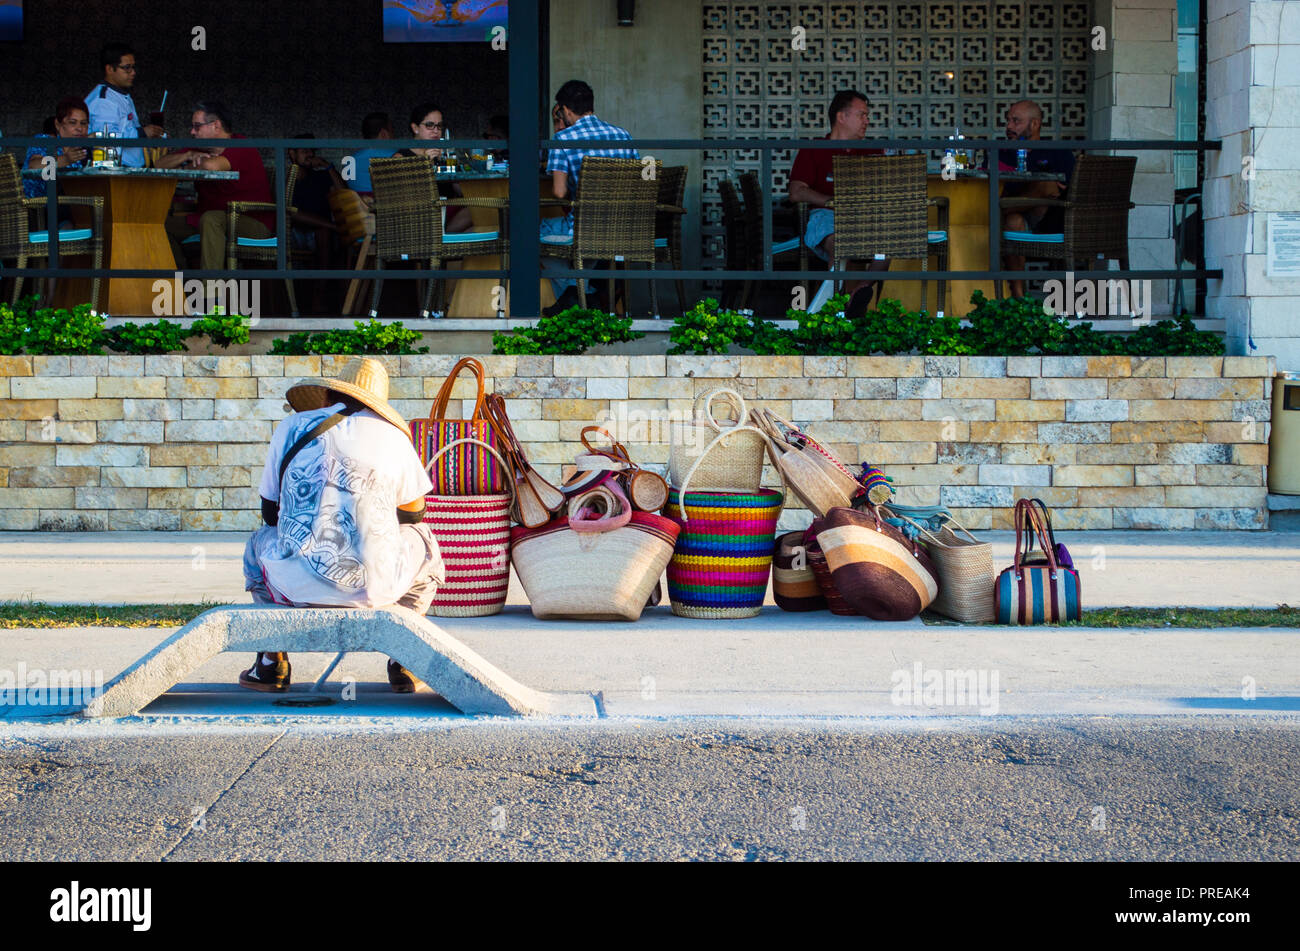 Vendedor callejero mexicano que vende maletas, esperando fuera de un restaurante caro. Ejemplo de desigualdad económica. Foto de stock